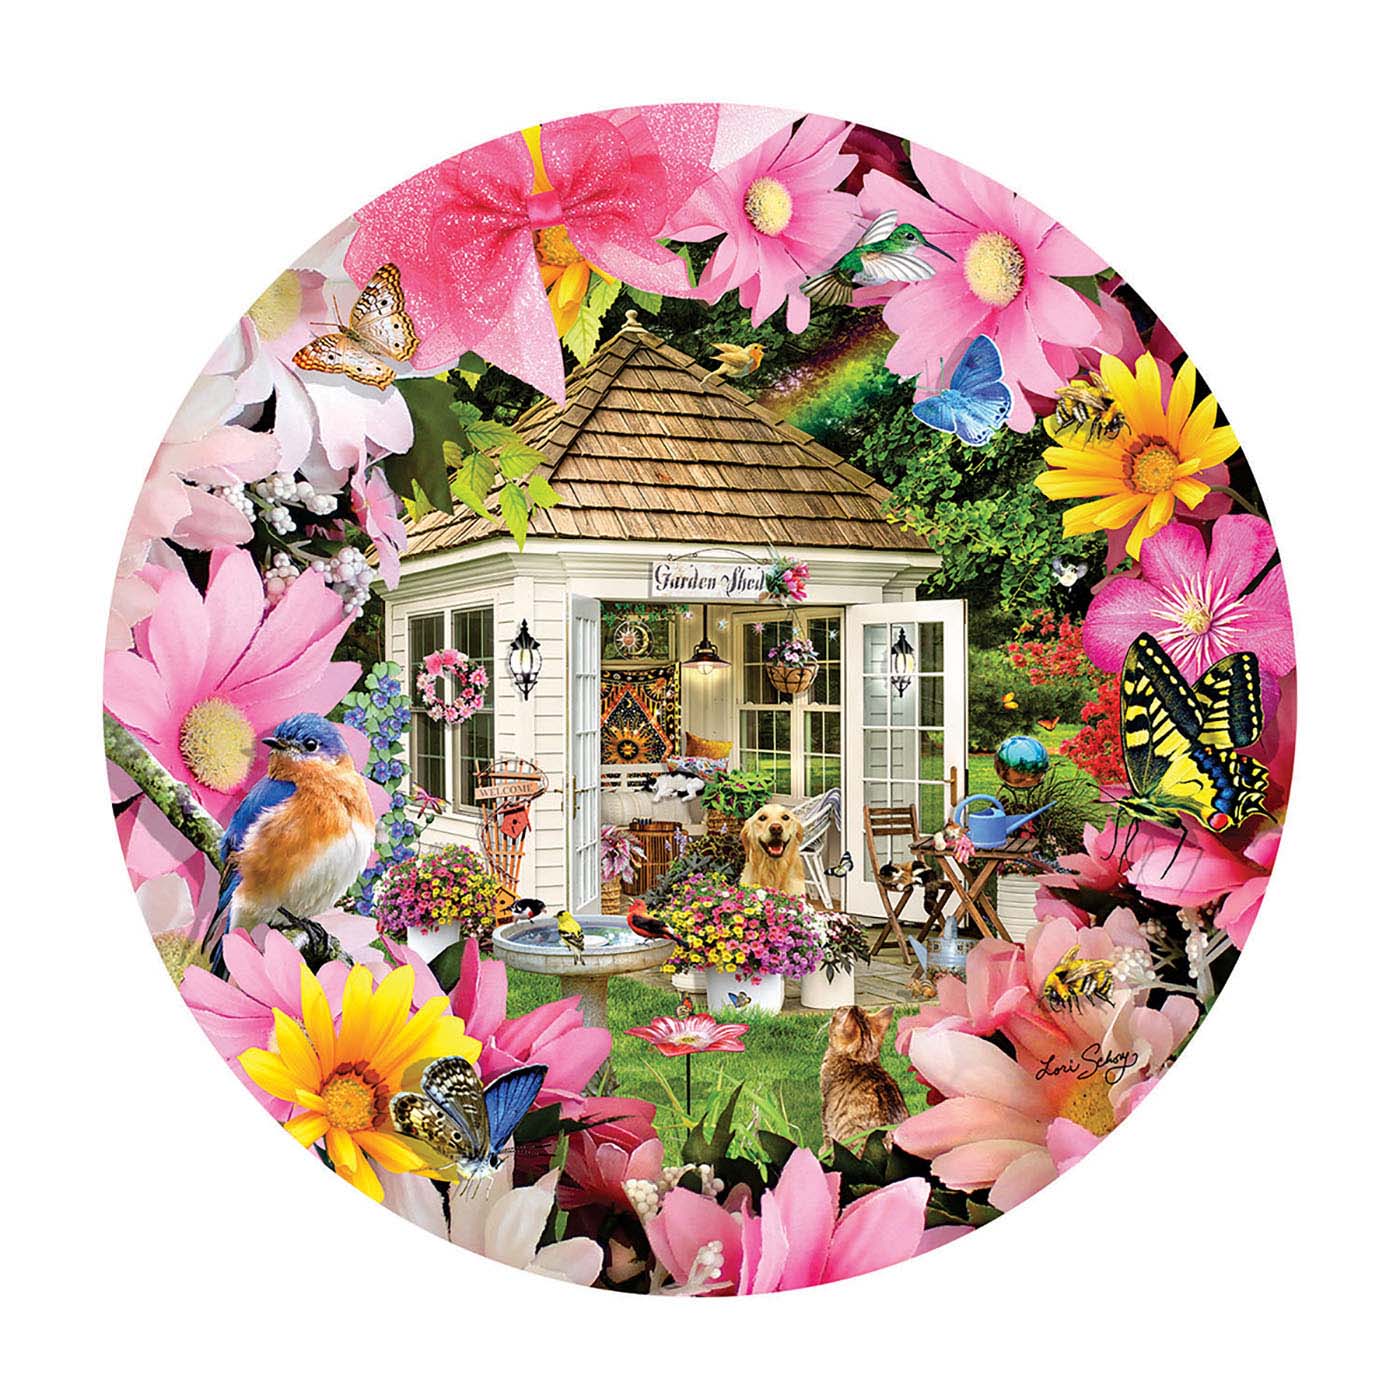 Garden Shed in Flower Flower & Garden Jigsaw Puzzle